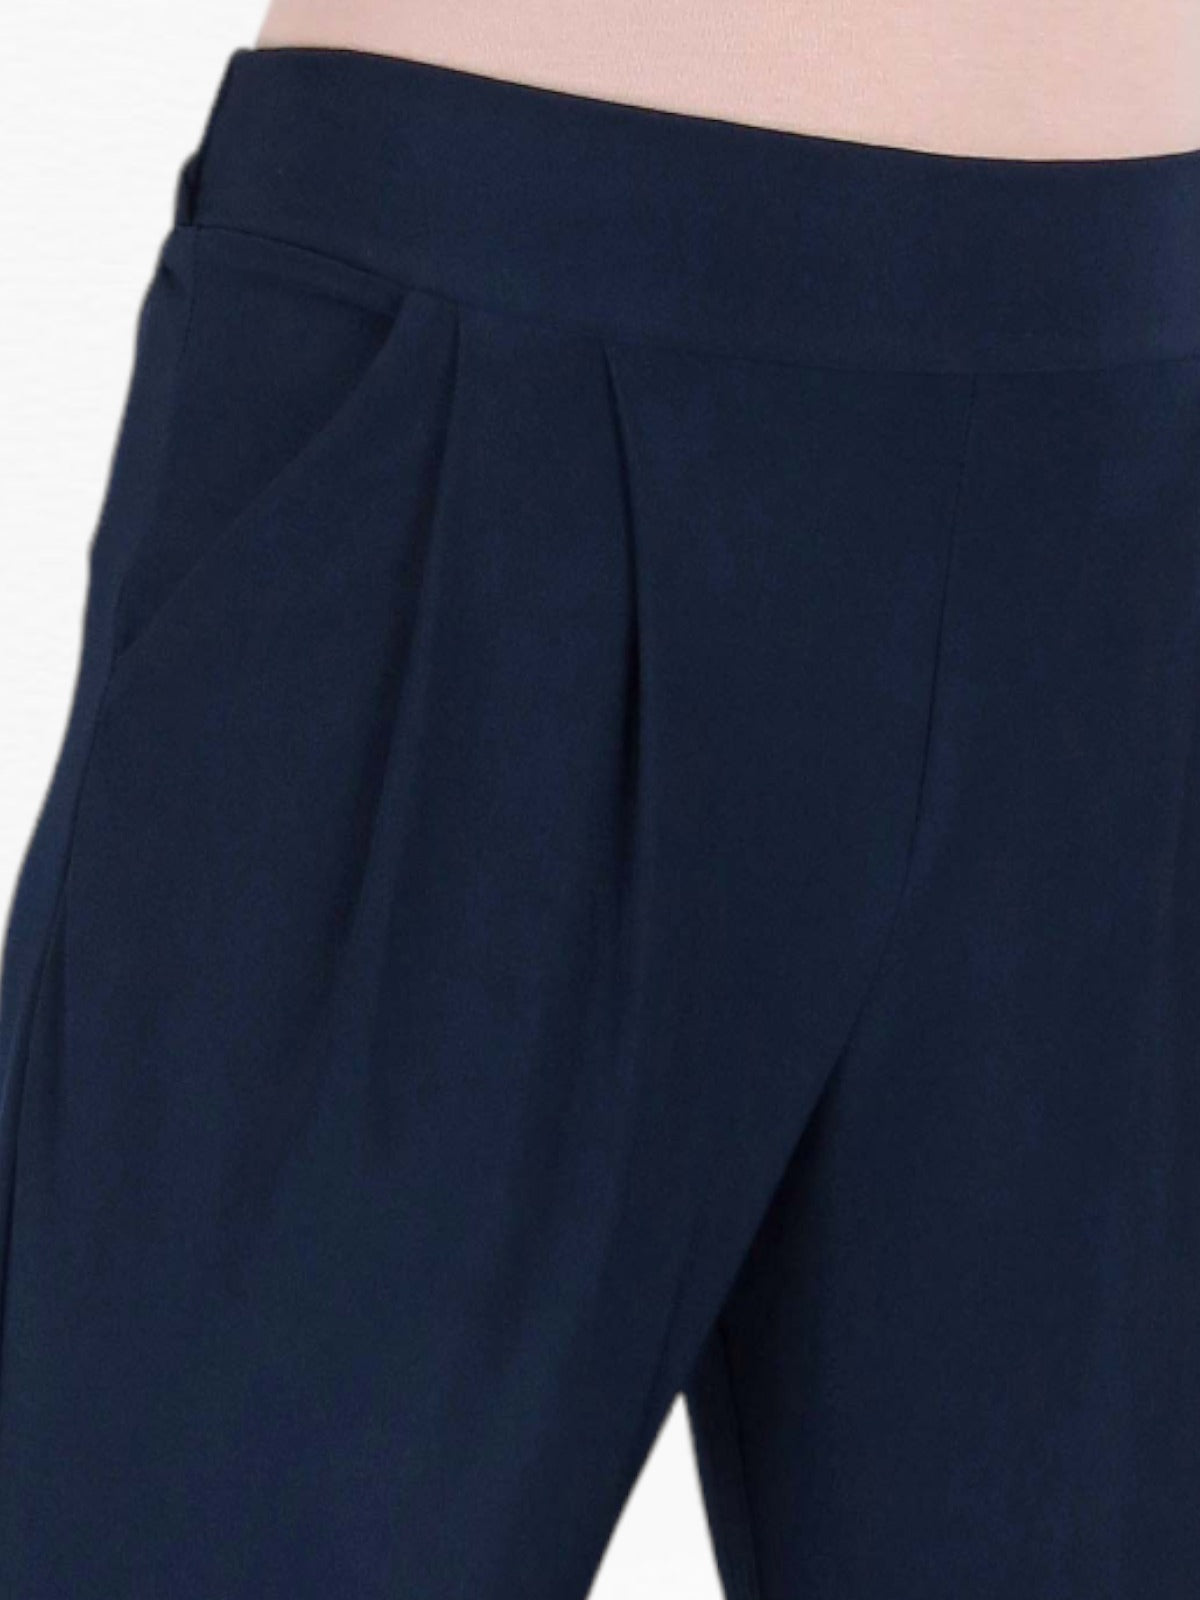 Women's Smart Work Elasticated Waist Trousers Navy Blue